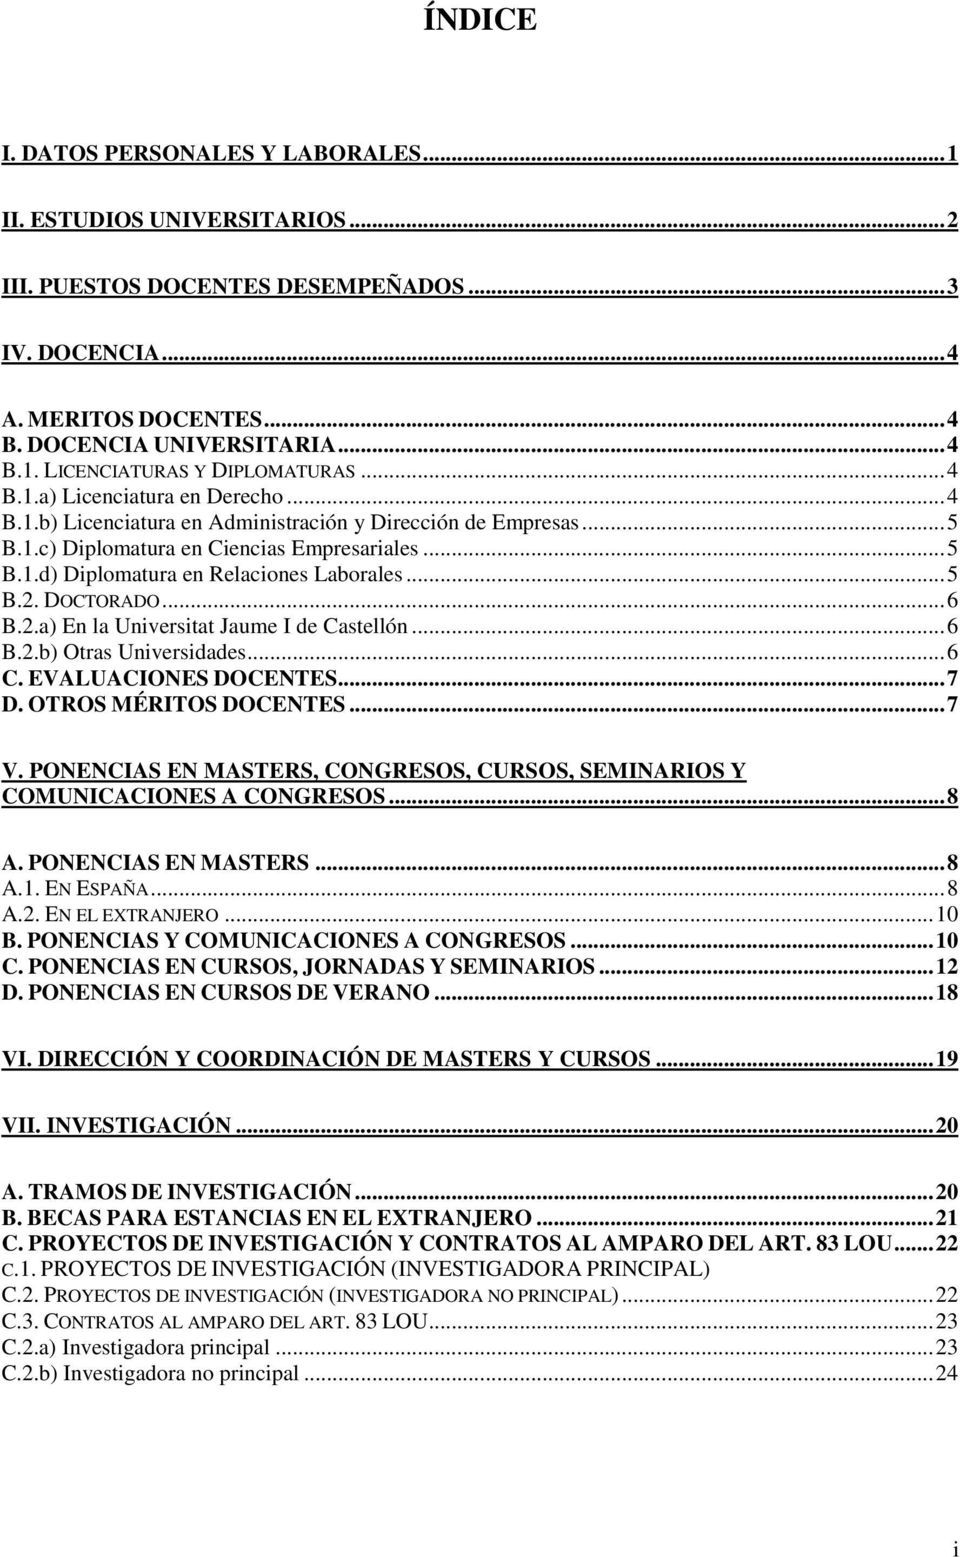 .. 5 B.2. DOCTORADO... 6 B.2.a) En la Universitat Jaume I de Castellón... 6 B.2.b) Otras Universidades... 6 C. EVALUACIONES DOCENTES... 7 D. OTROS MÉRITOS DOCENTES... 7 V.